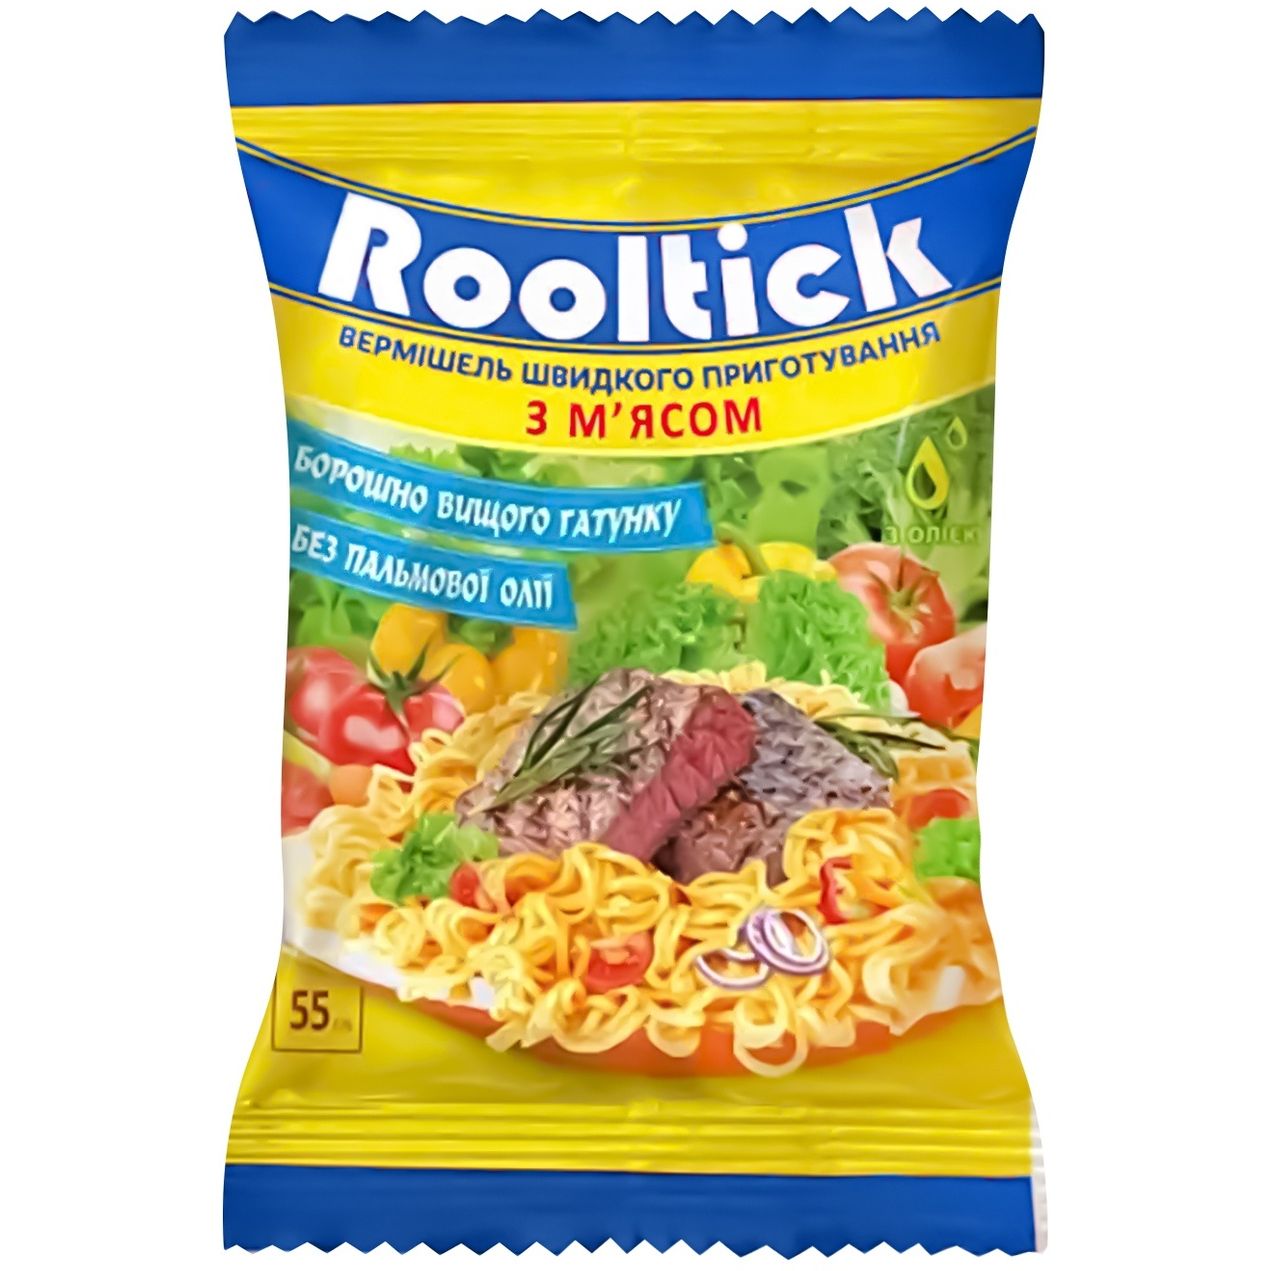 Вермішель швидкого приготування Rooltick зі смаком м'яса 55 г - фото 1